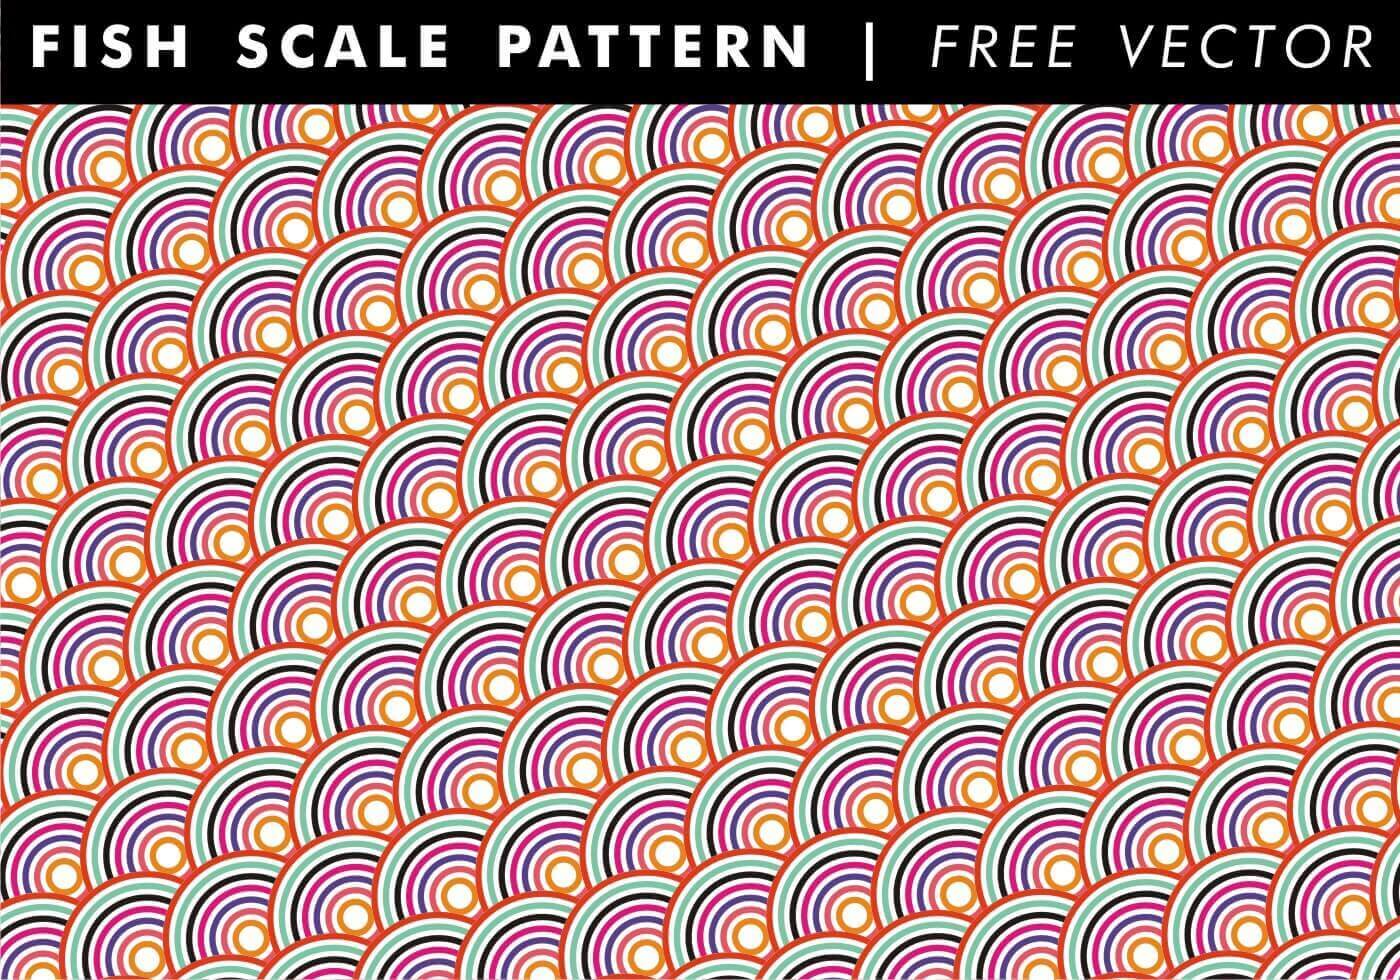 Free Fish Scale Pattern